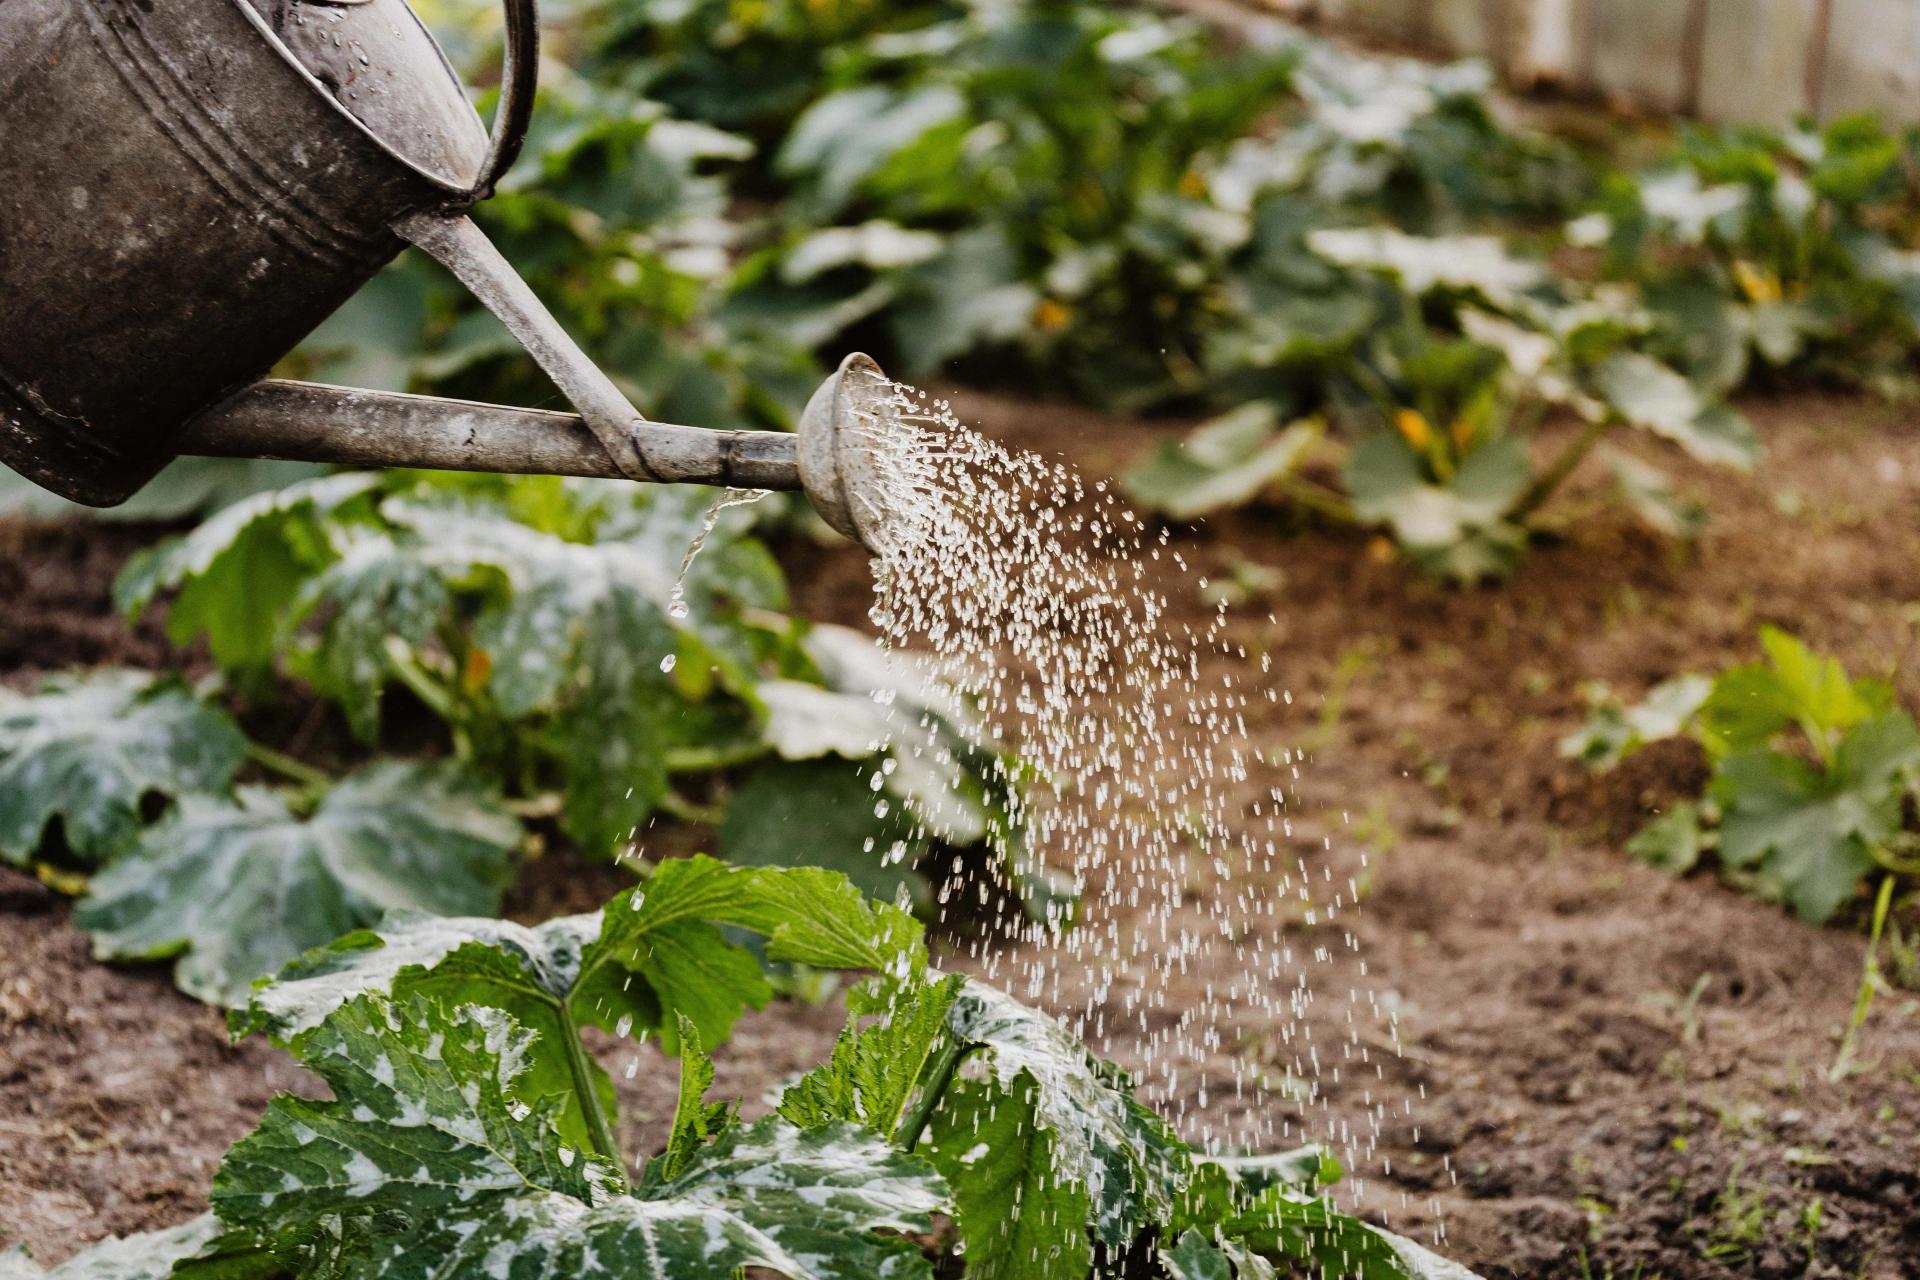 Watering in the Garden